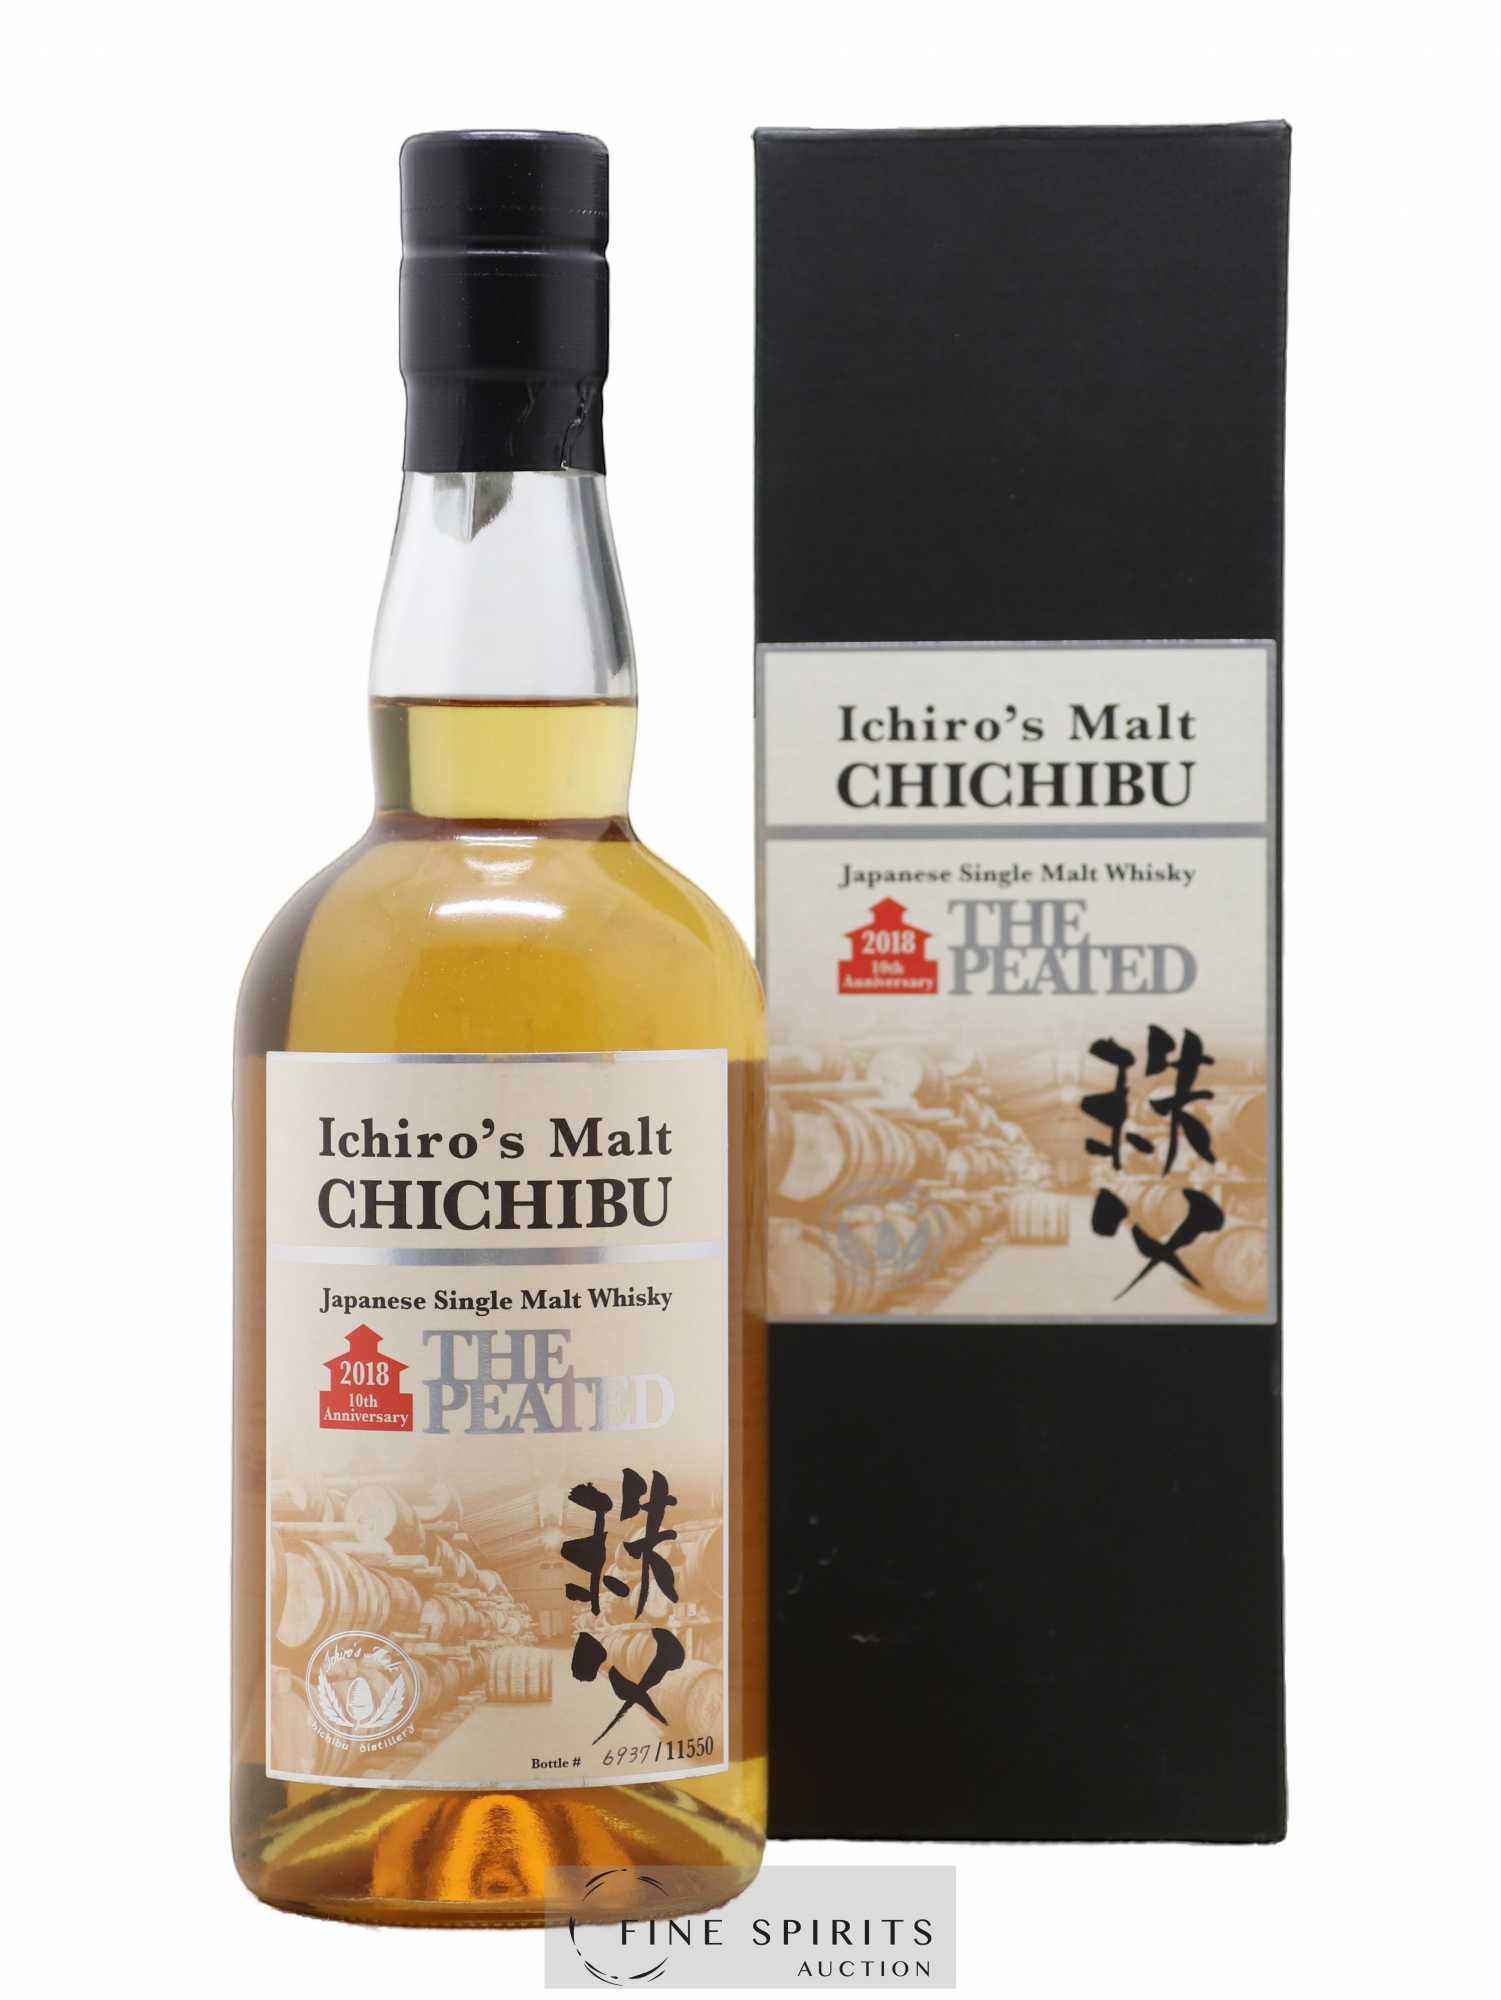 Chichibu Of. The Peated 2018 Release - One of 11550 Ichiro's Malt 